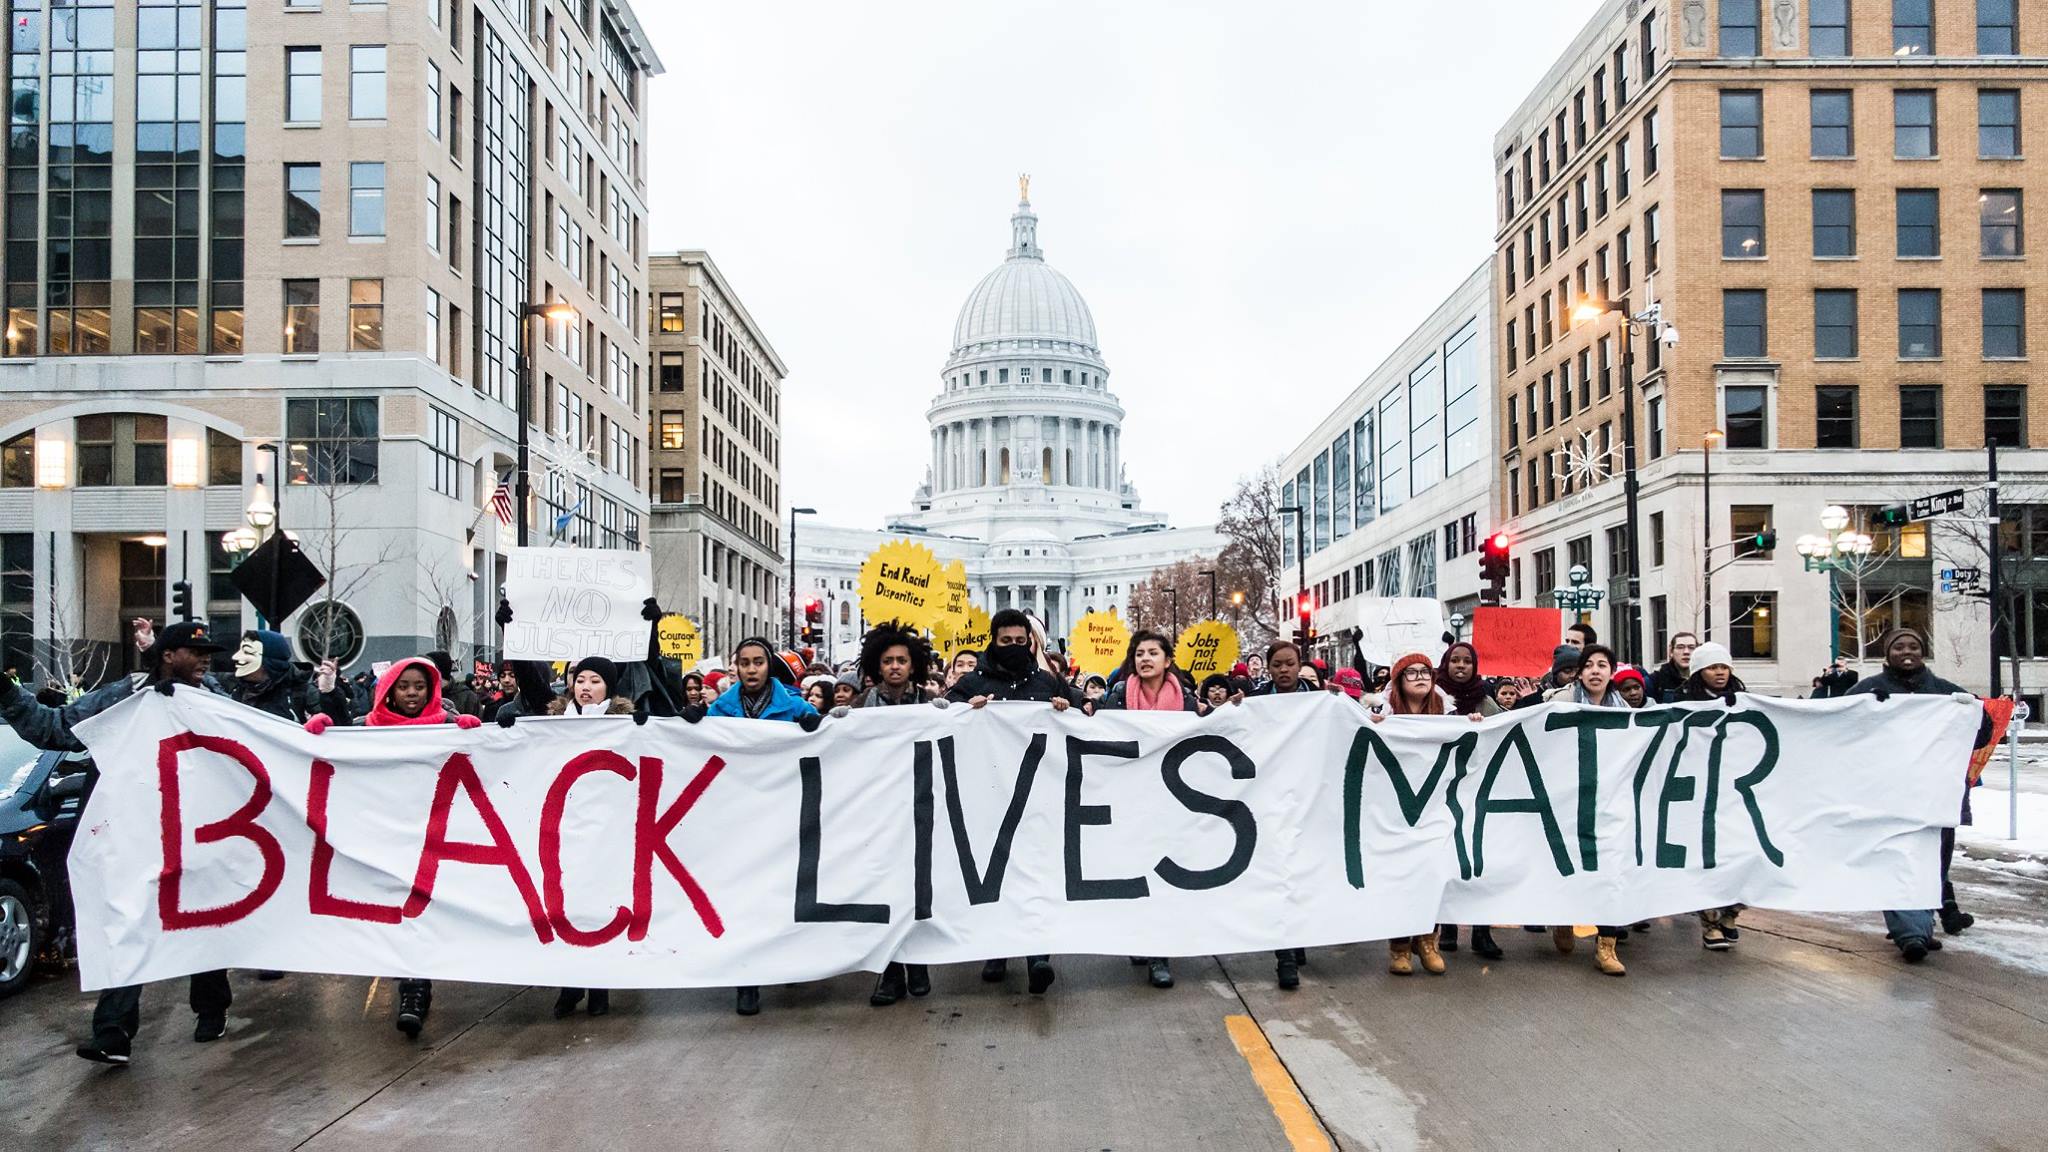 Movimiento “Black Lives Matter” nominado al Premio Nobel de la Paz